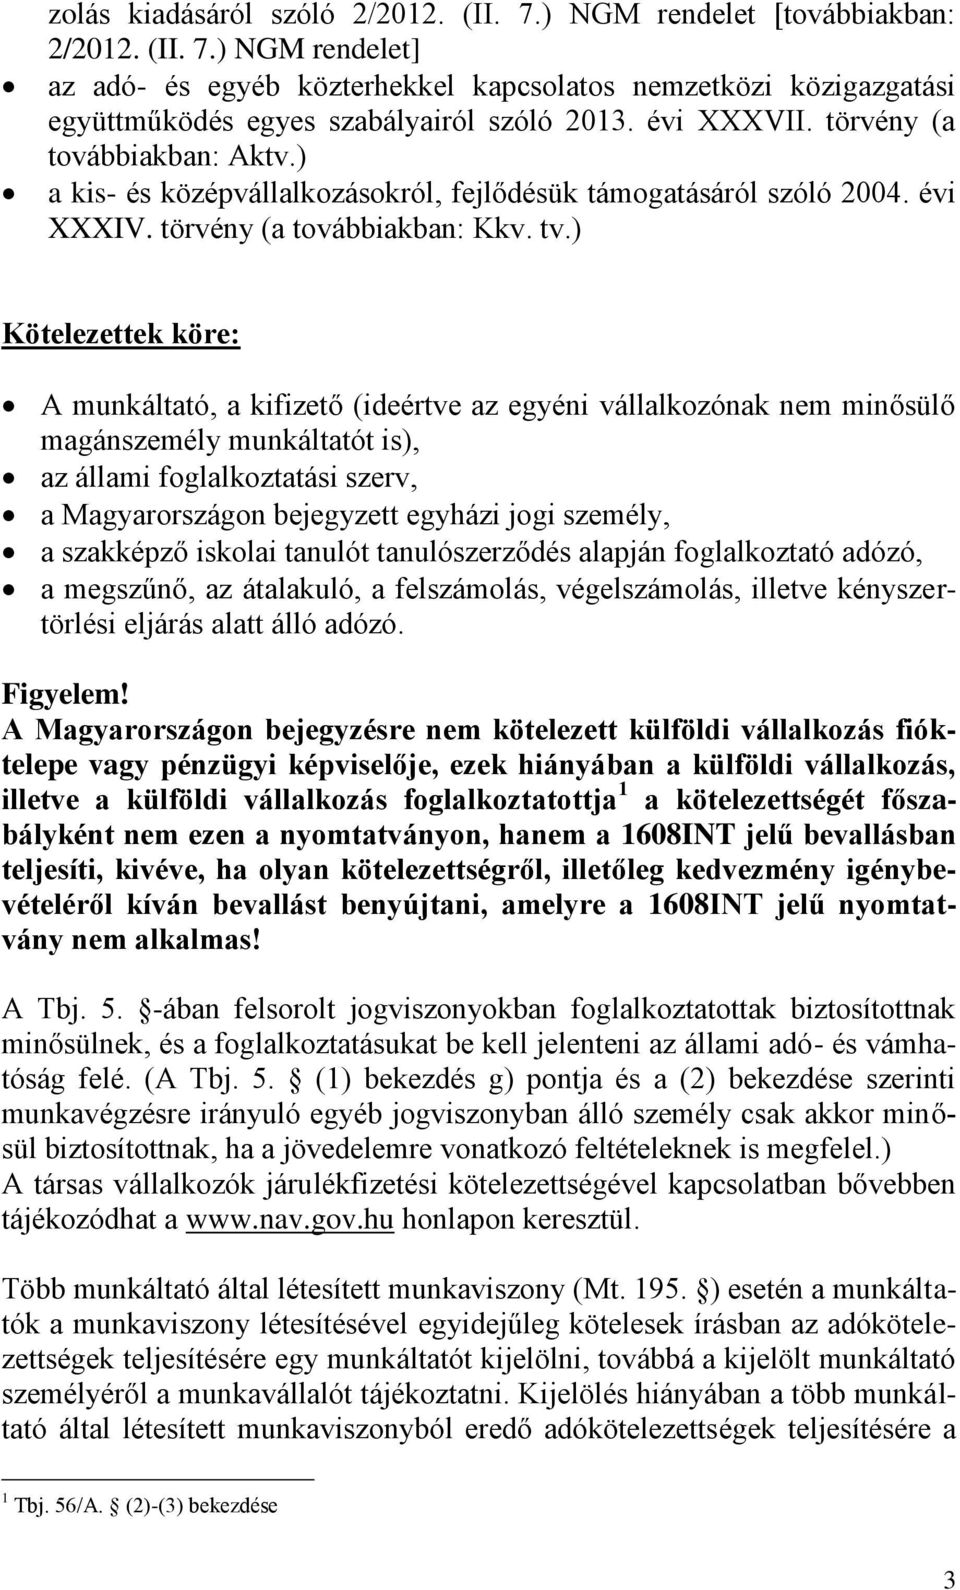 ) Kötelezettek köre: A munkáltató, a kifizető (ideértve az egyéni vállalkozónak nem minősülő magánszemély munkáltatót is), az állami foglalkoztatási szerv, a Magyarországon bejegyzett egyházi jogi